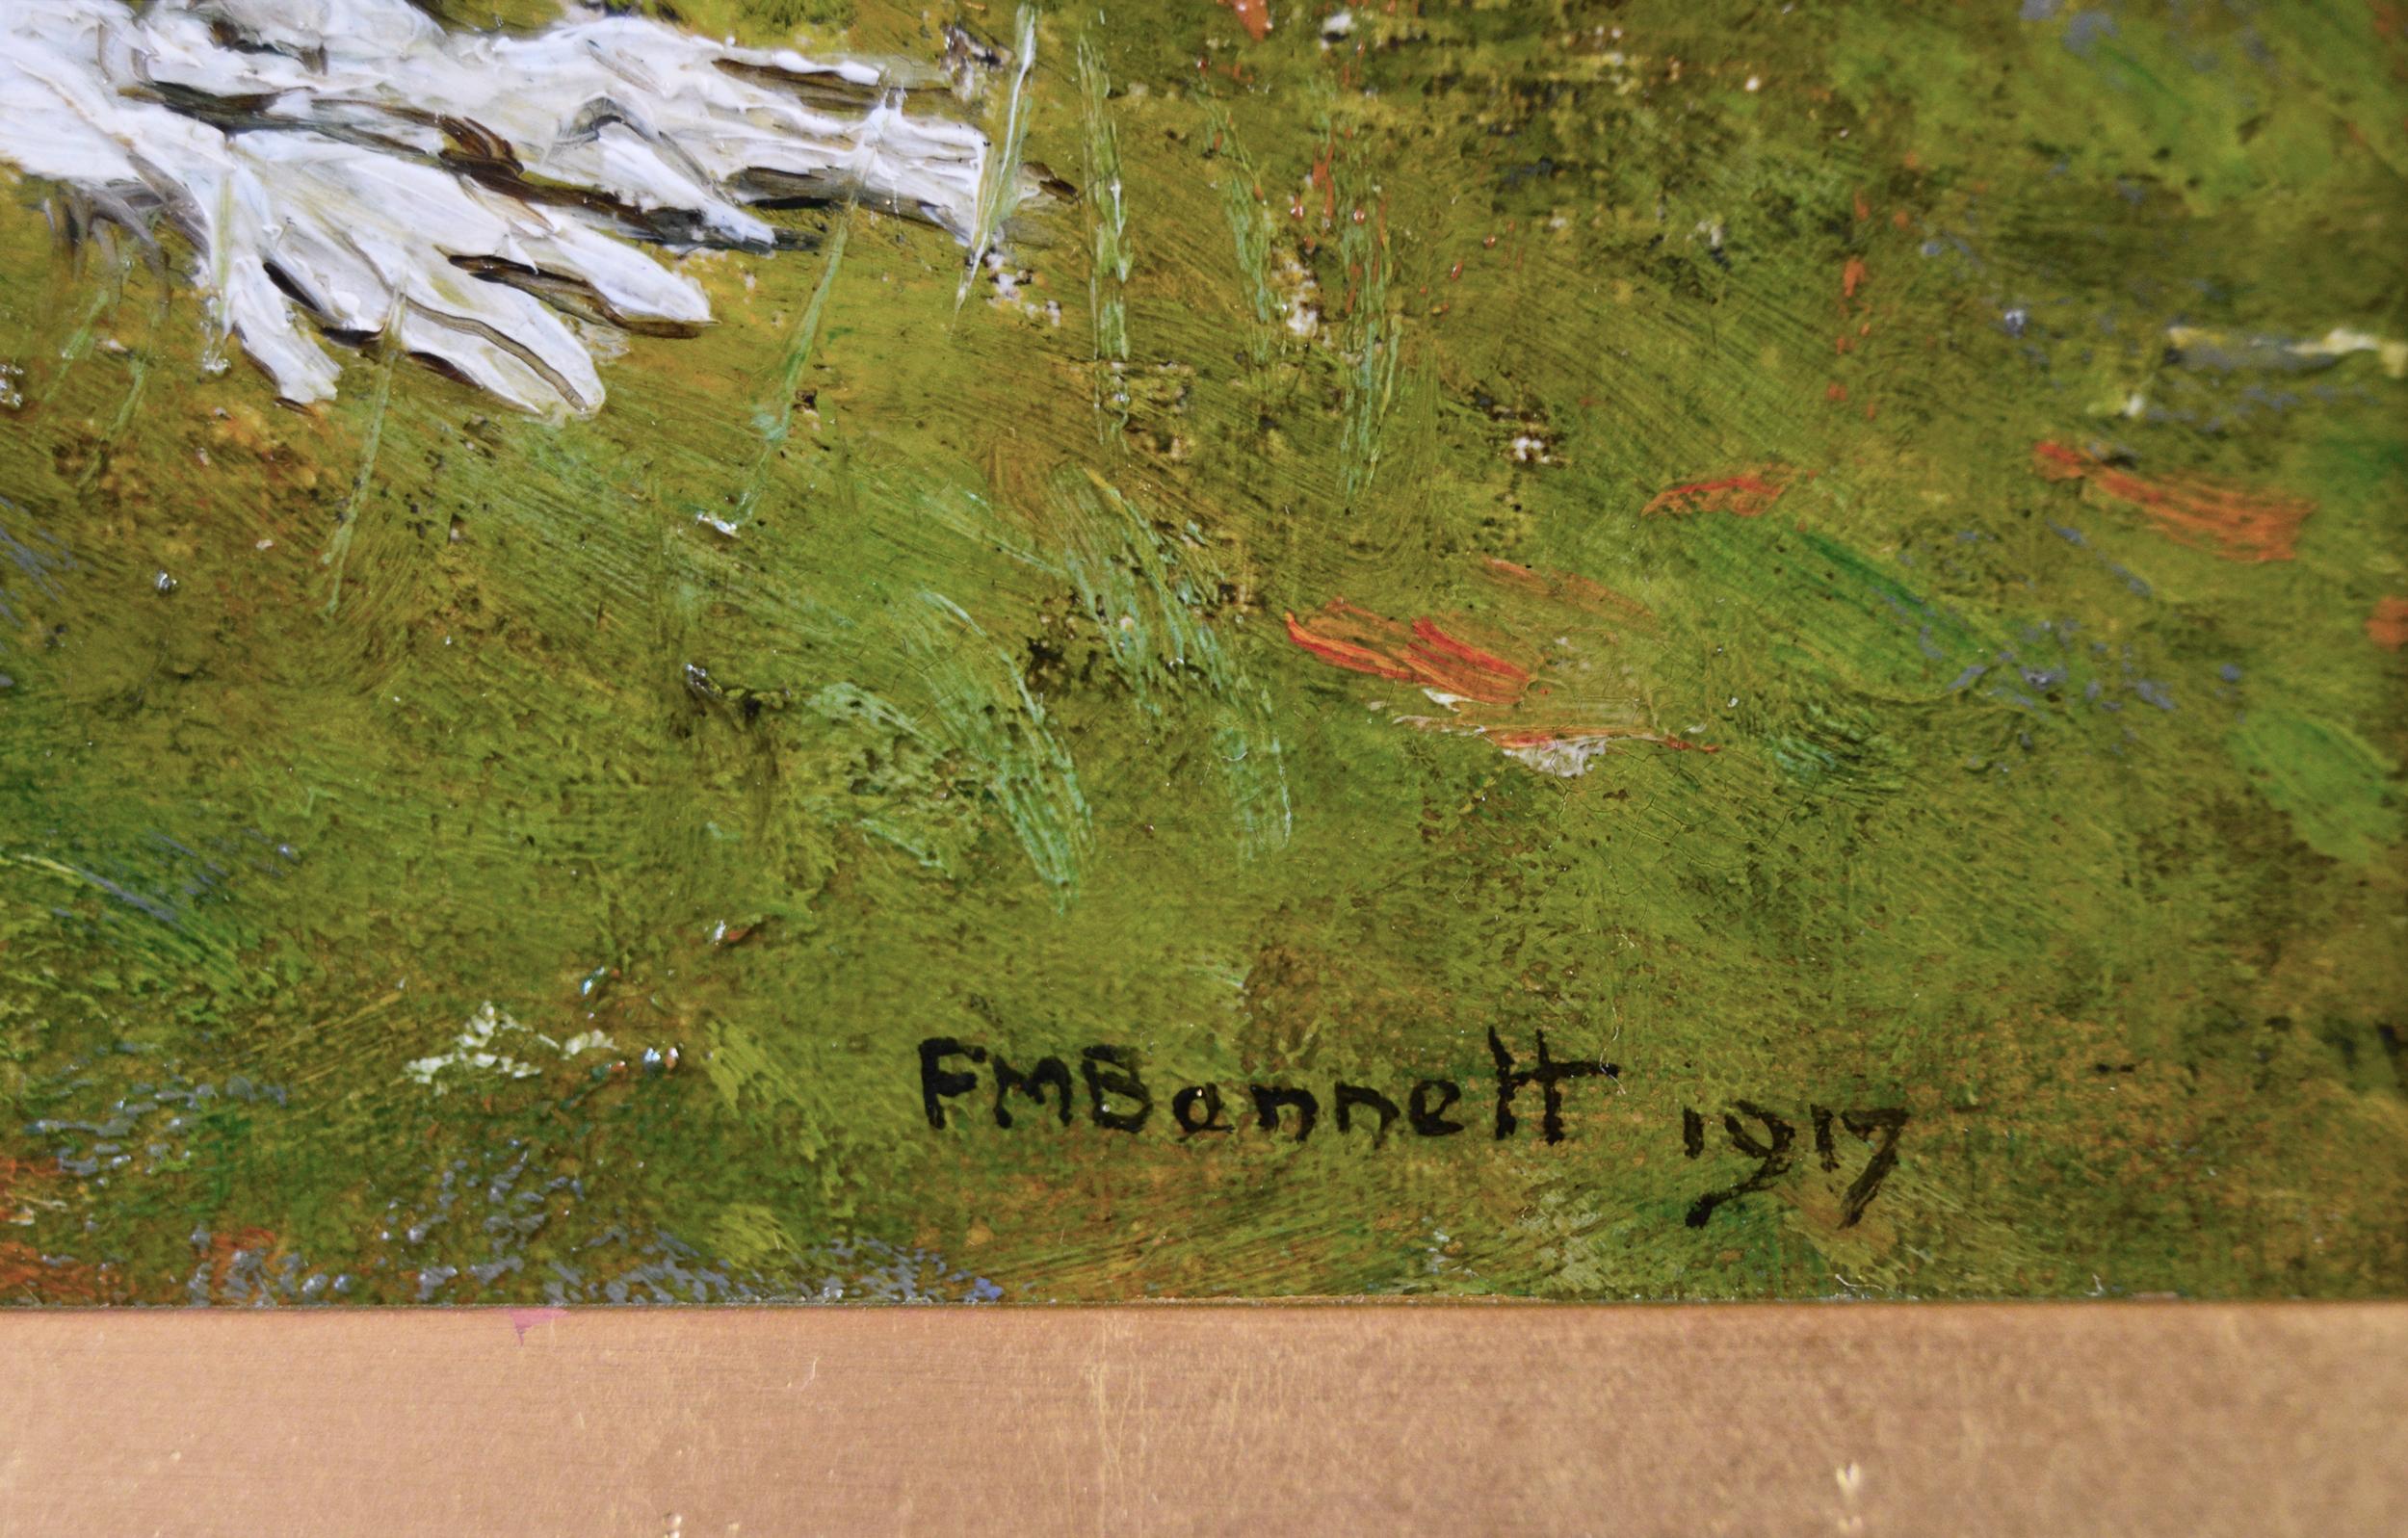 Frank Franks Bennett
Britannique, (1874-1952)
Dans le jardin
Huile sur panneau, signée et datée 1917
Taille de l'image : 11 pouces x 13,5 pouces 
Dimensions, y compris le cadre : 20 pouces x 22,5 pouces

Charmante scène de genre représentant deux